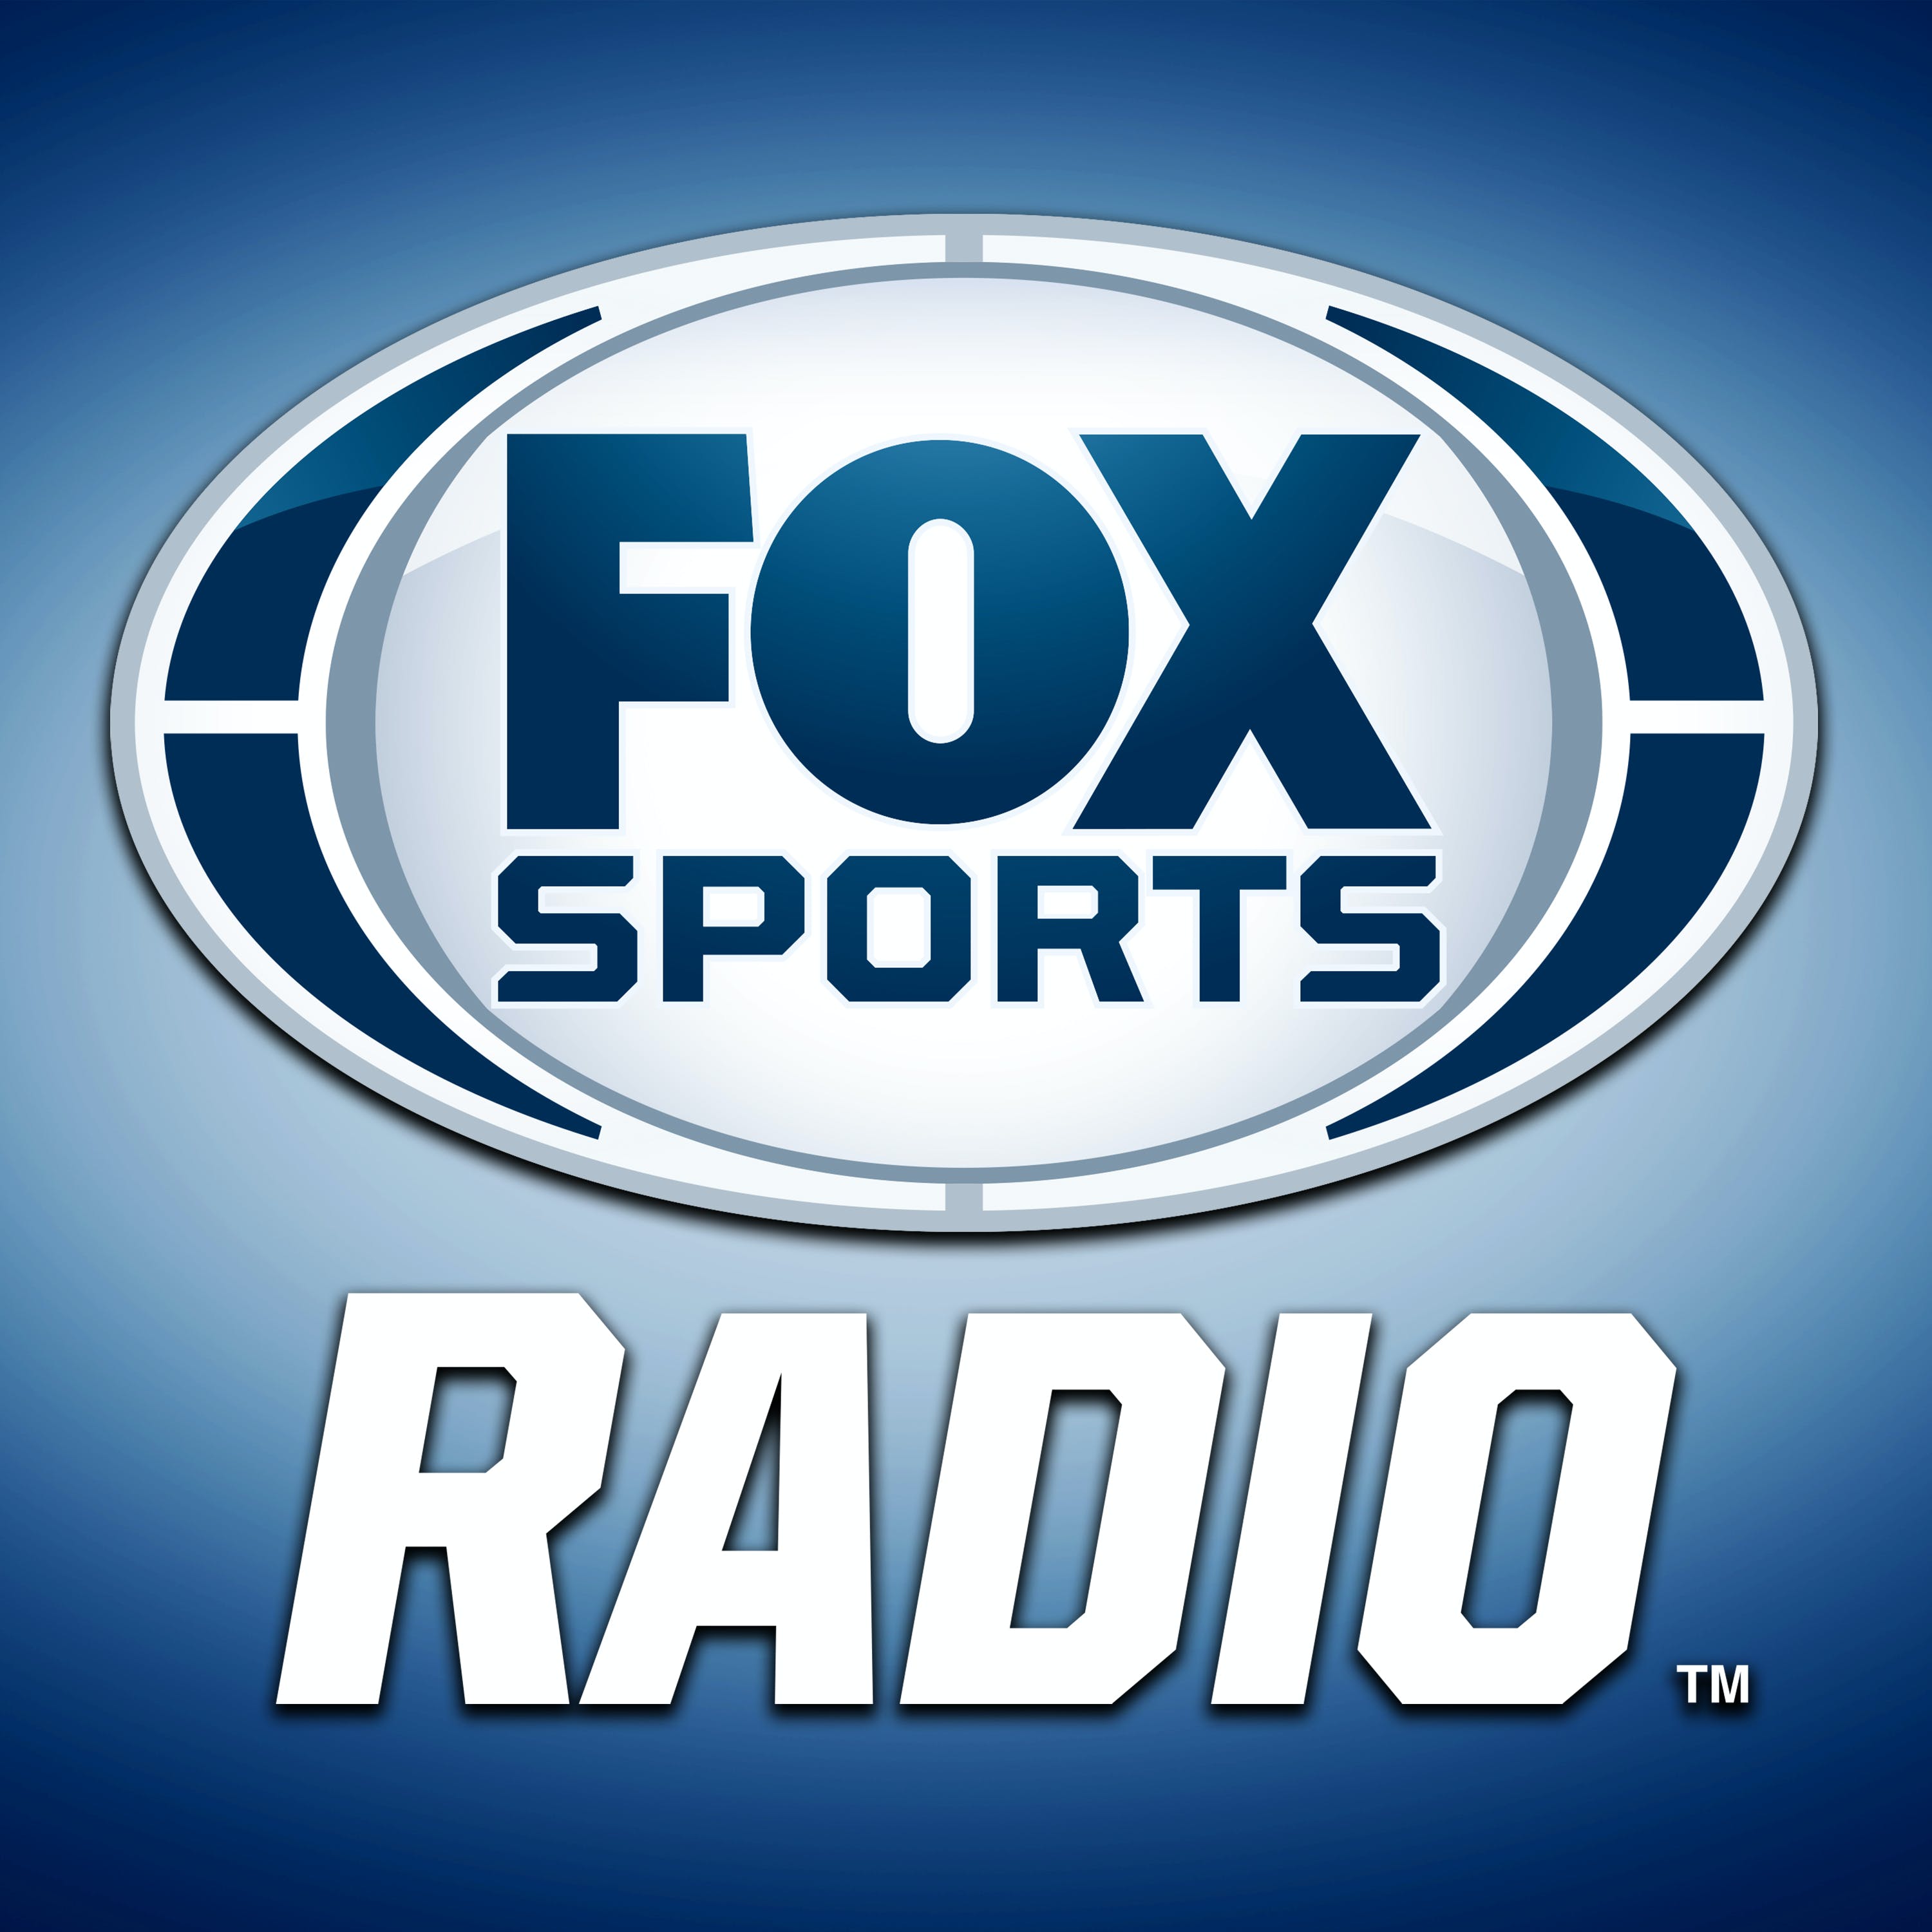 06/26/2021 - FOX Sports Saturday with Steve Hartman and Geoff Schwartz